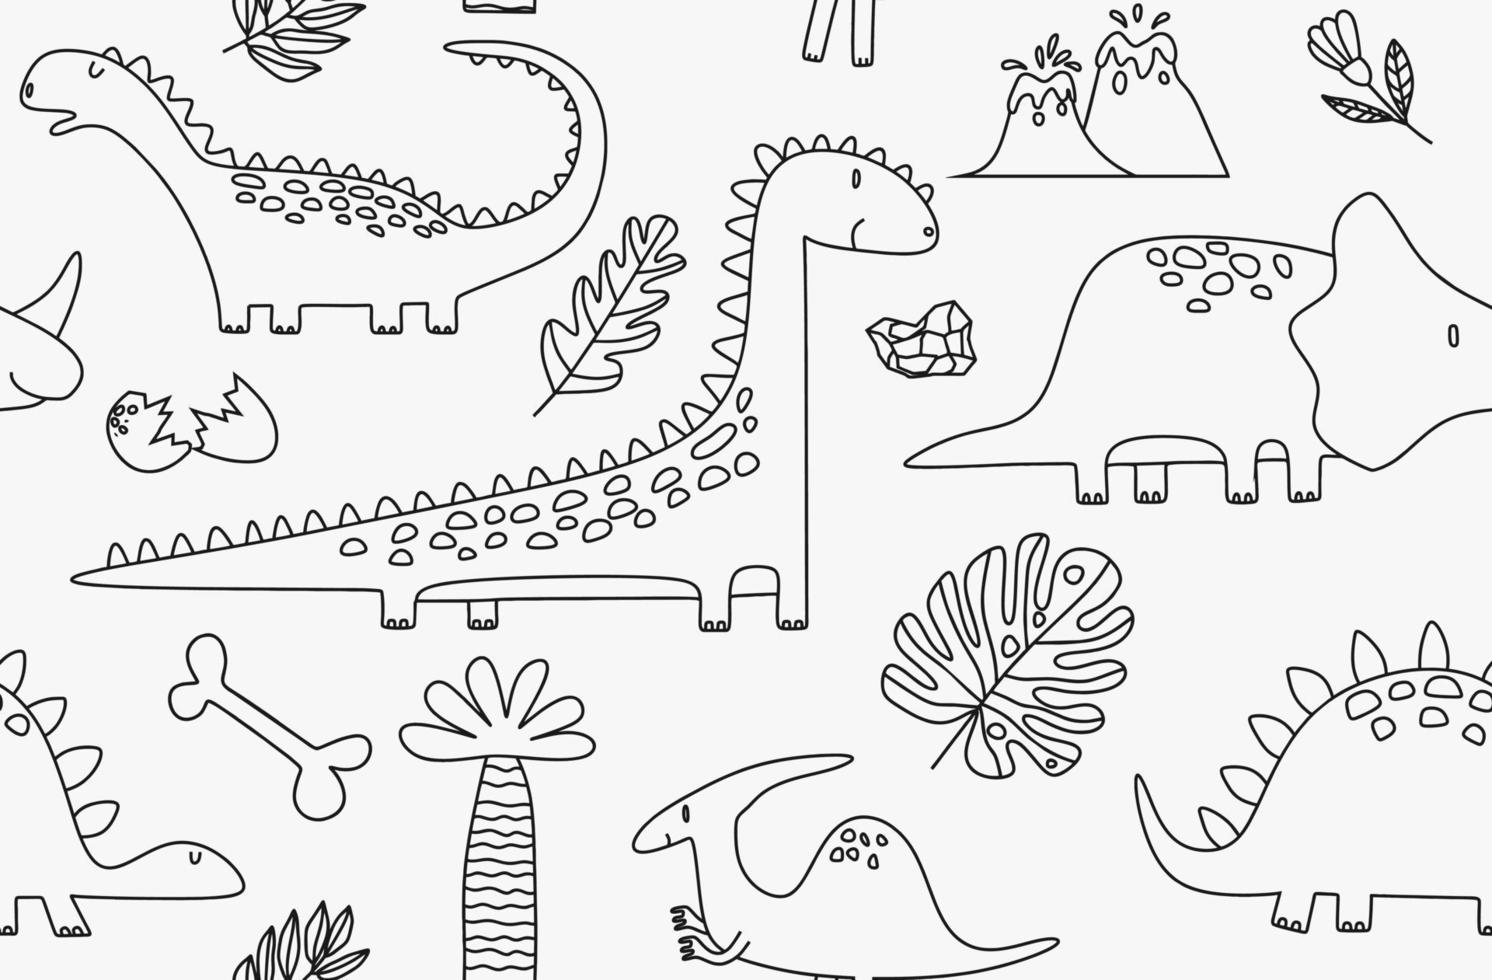 padrão perfeito com dinossauros desenhados à mão em estilo escandinavo. vetor